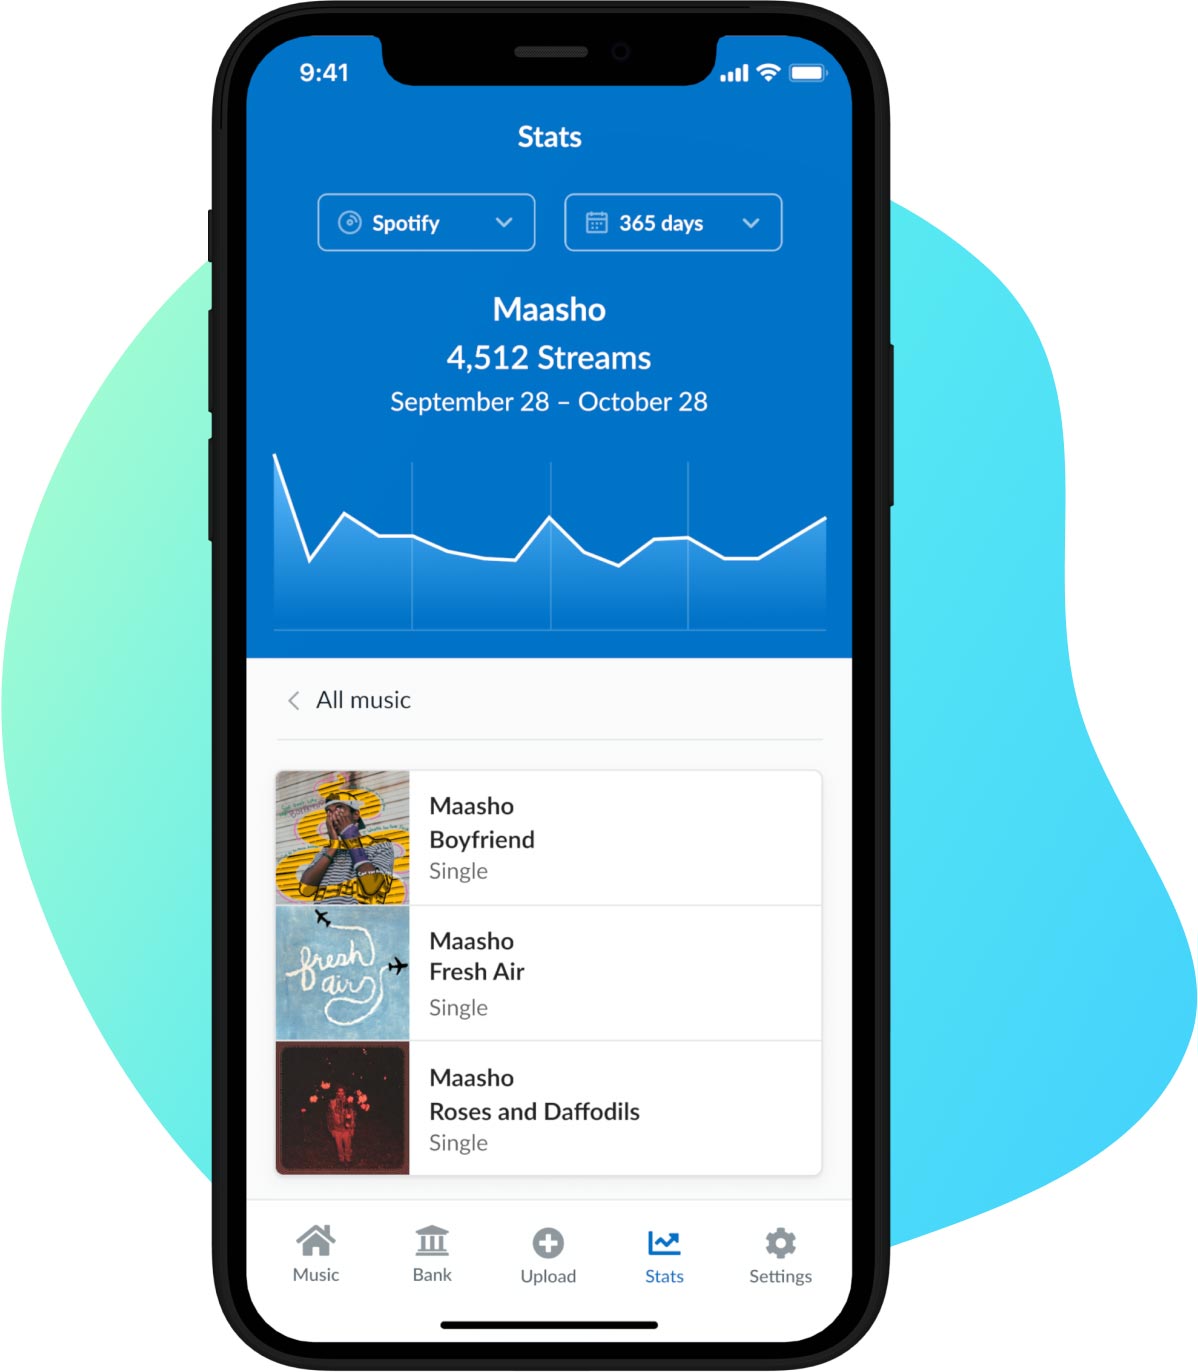 Ejemplo de la pestaña de estadísticas de la aplicación de DistroKid para iPhone, mostrando las estadísticas de Spotify y Apple Music, con una mancha azul detrás